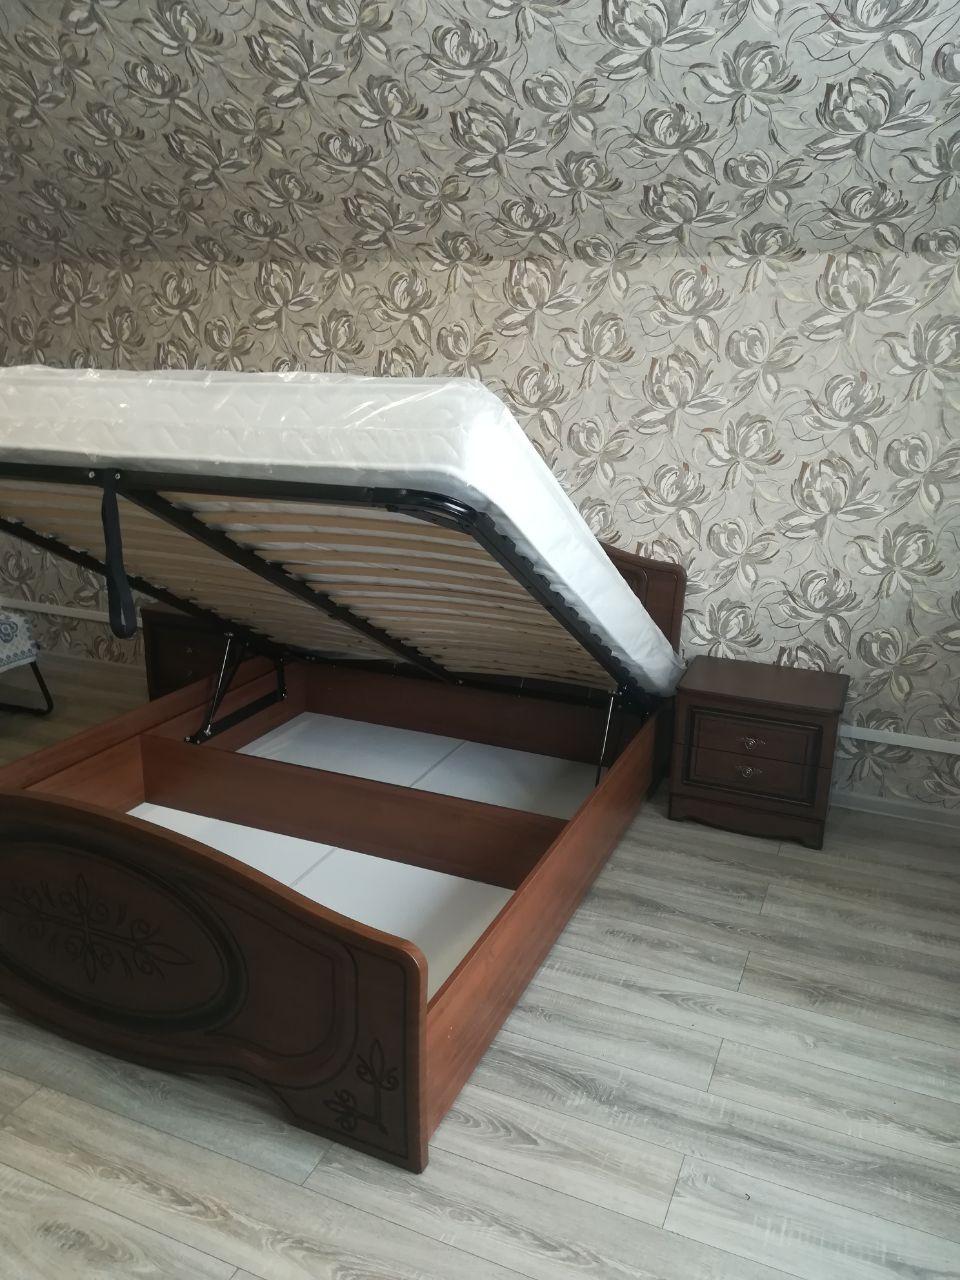 Полутораспальная кровать "Натали" 120х 90 с подъемным мех-ом цвет клен/ясень бежевый изножье низкое